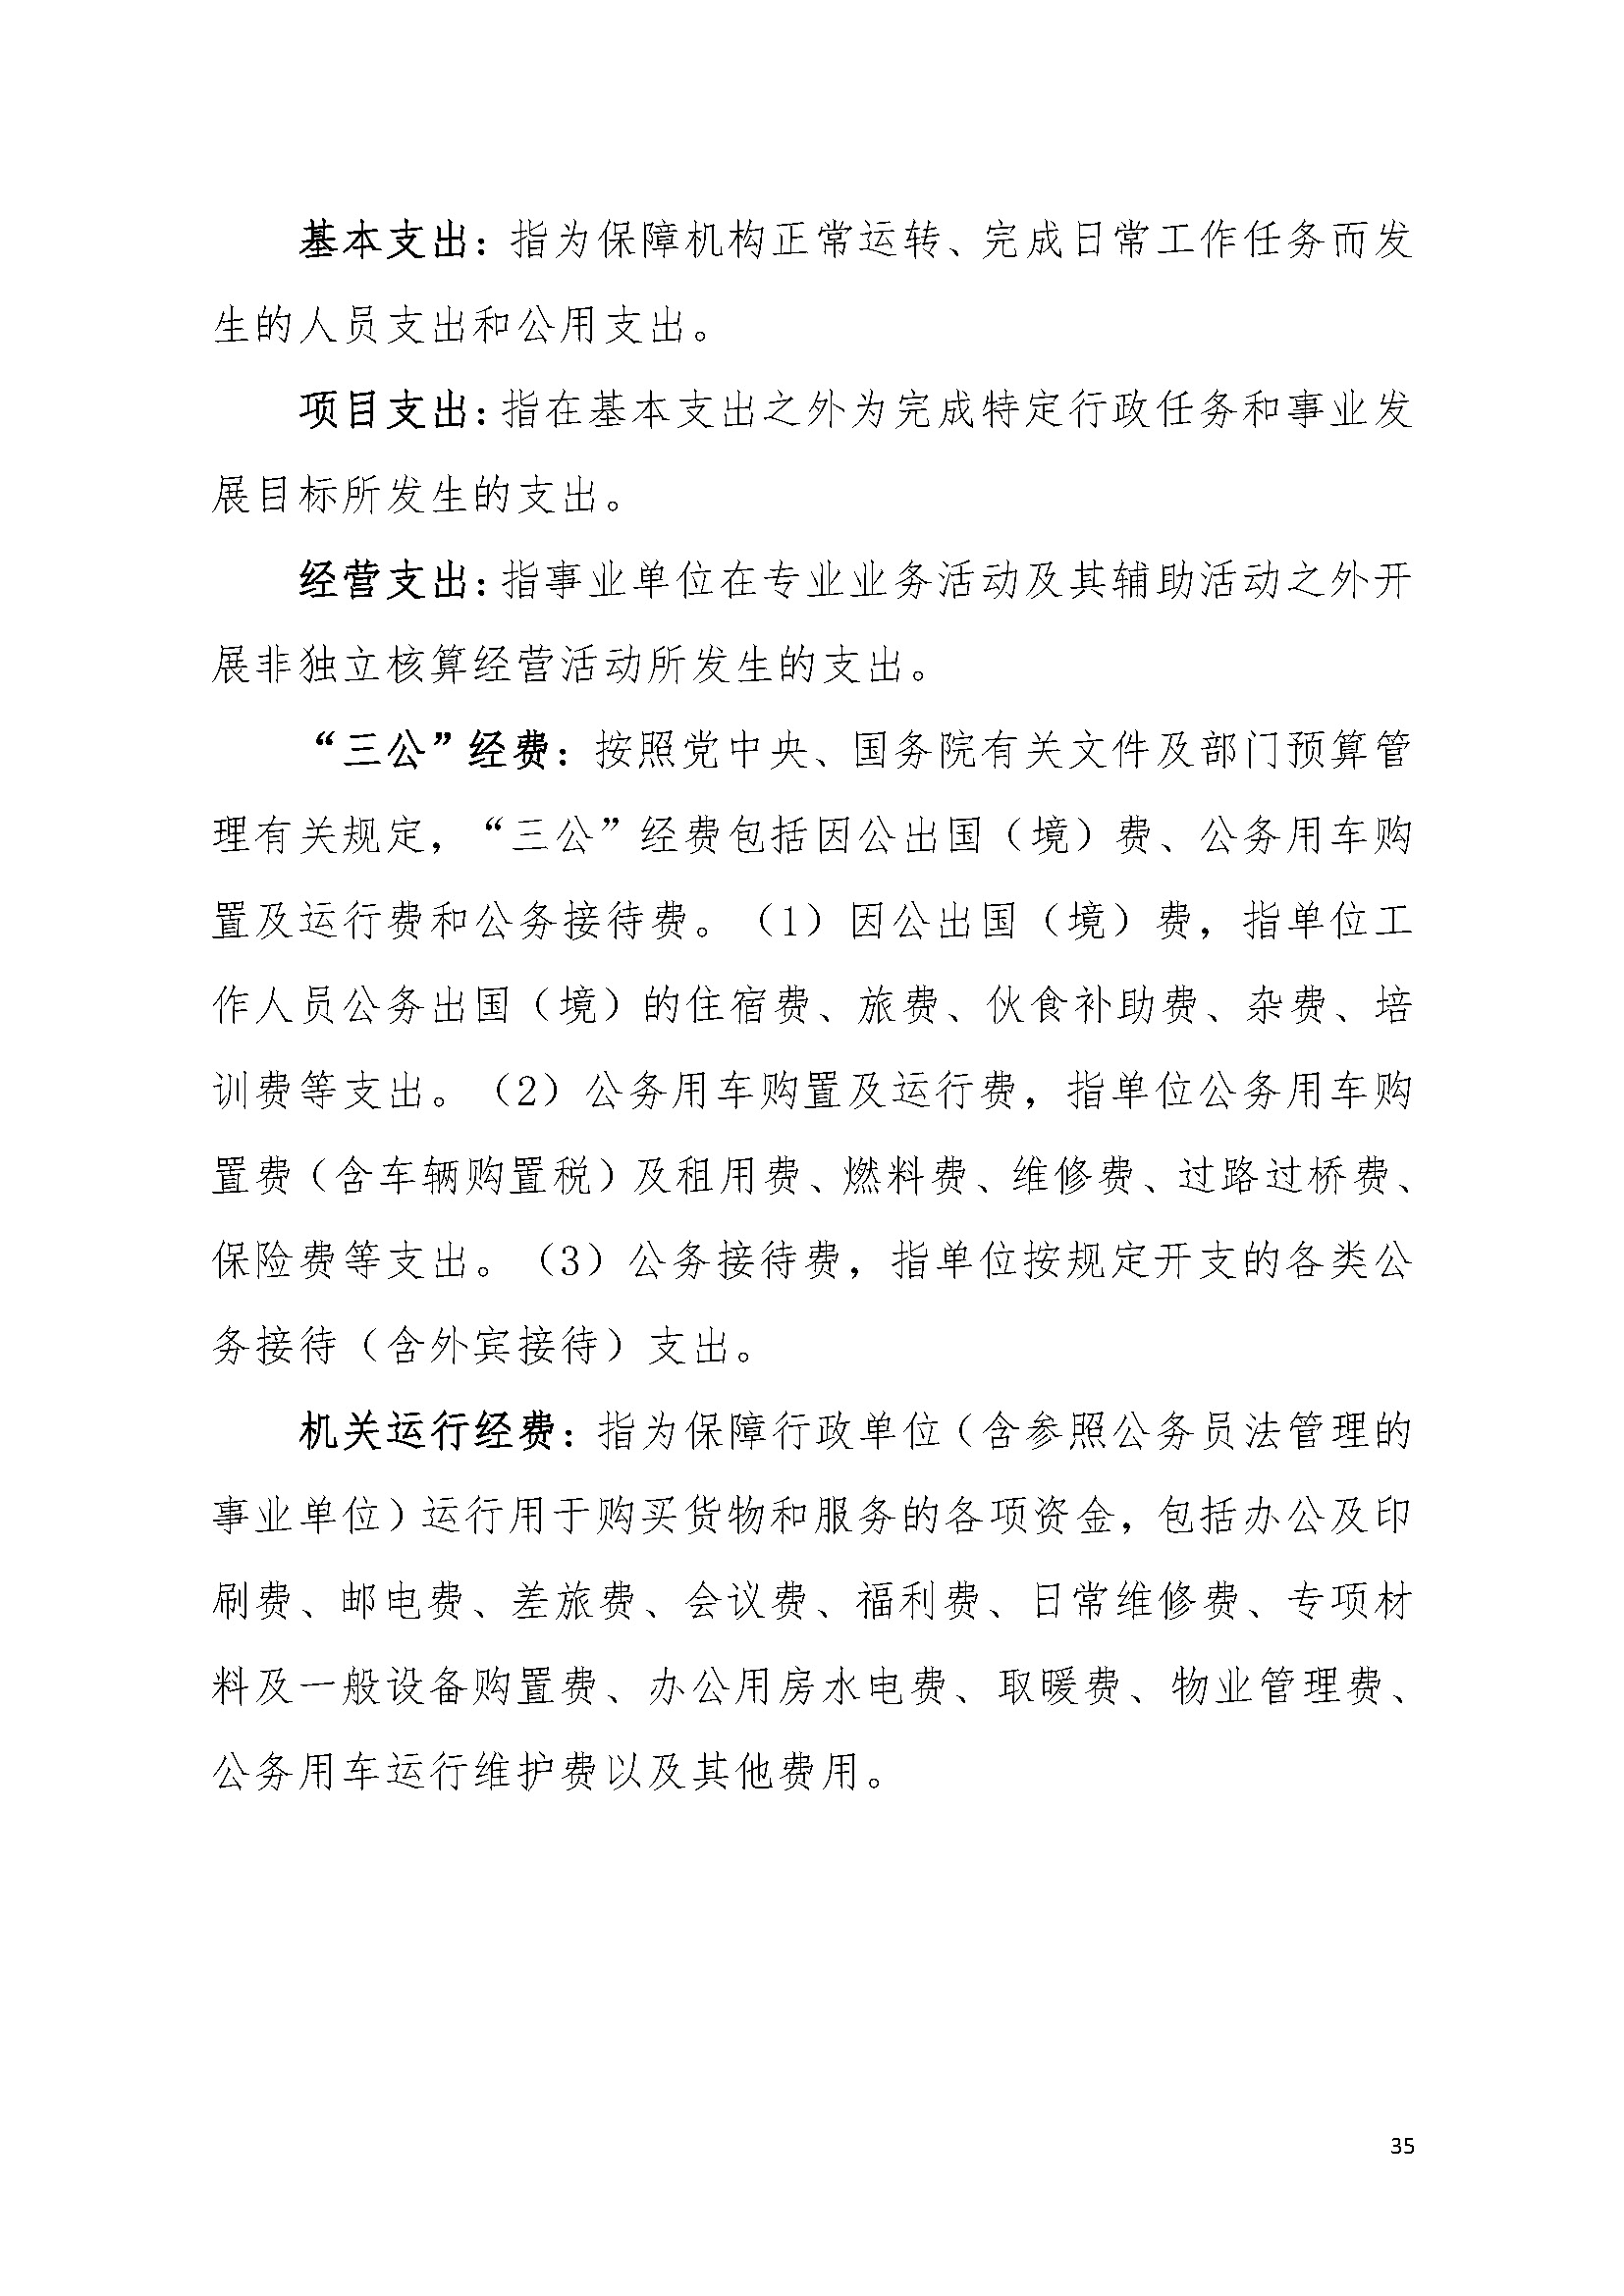 2021年广东省司法厅部门决算 _页面_35.jpg